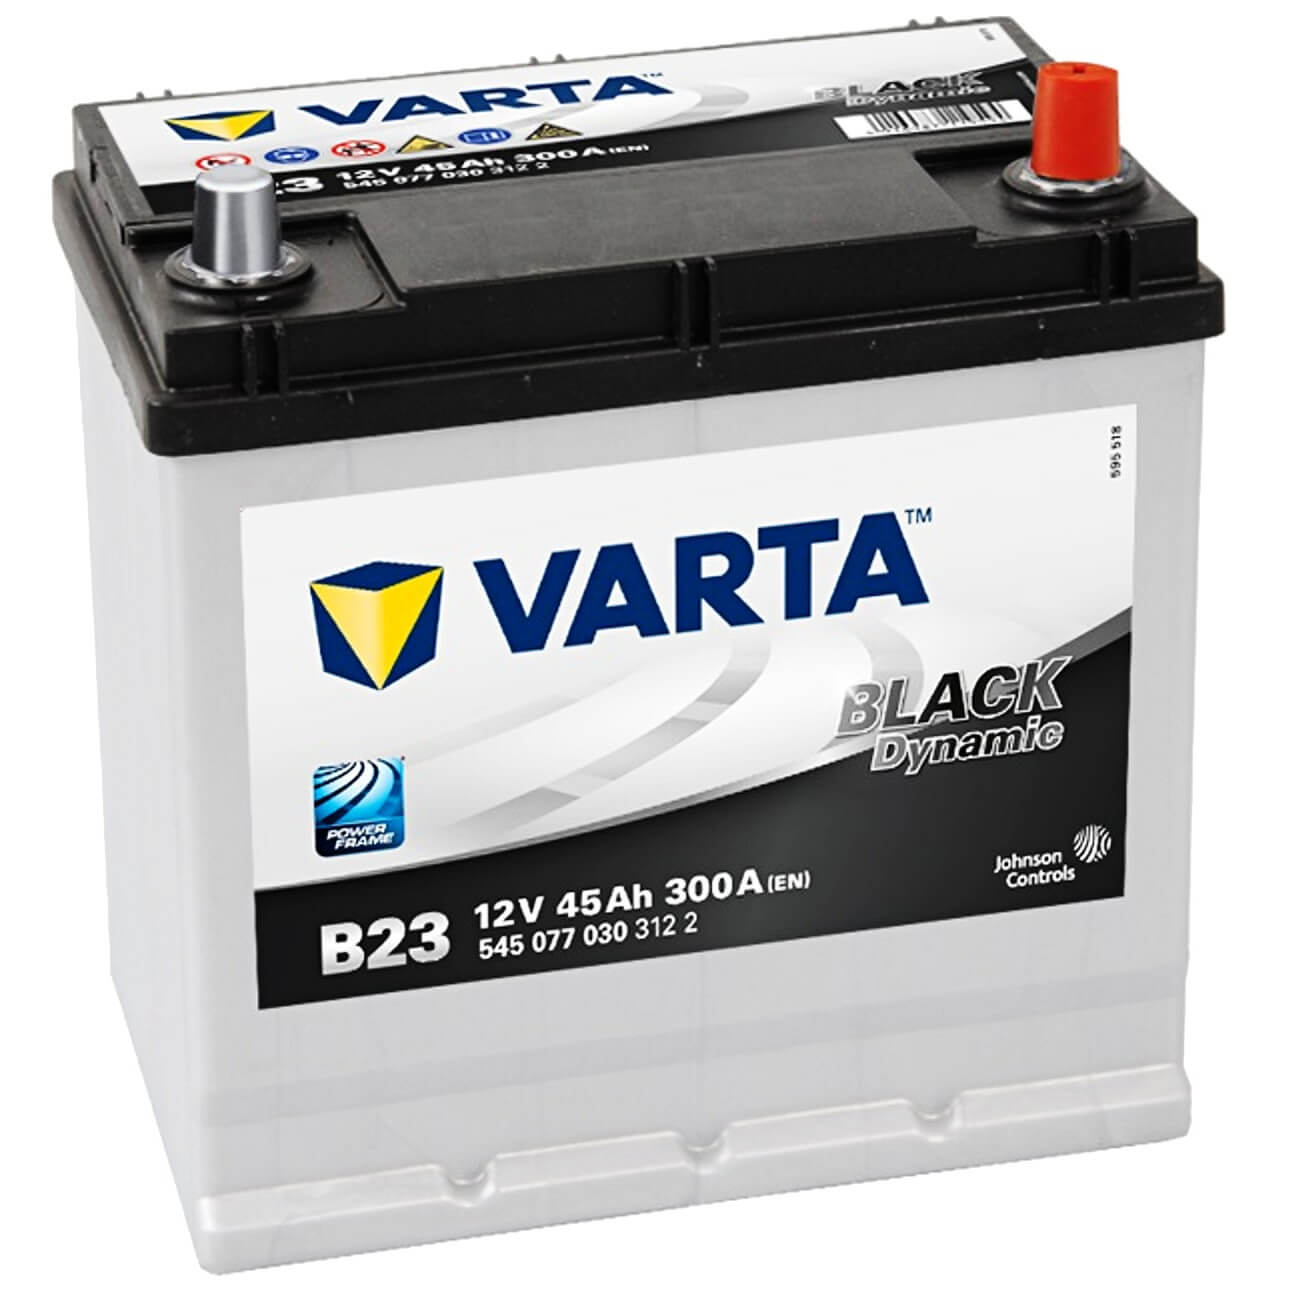 VARTA Promotive Black 12V 220Ah N5 ab 281,53 €